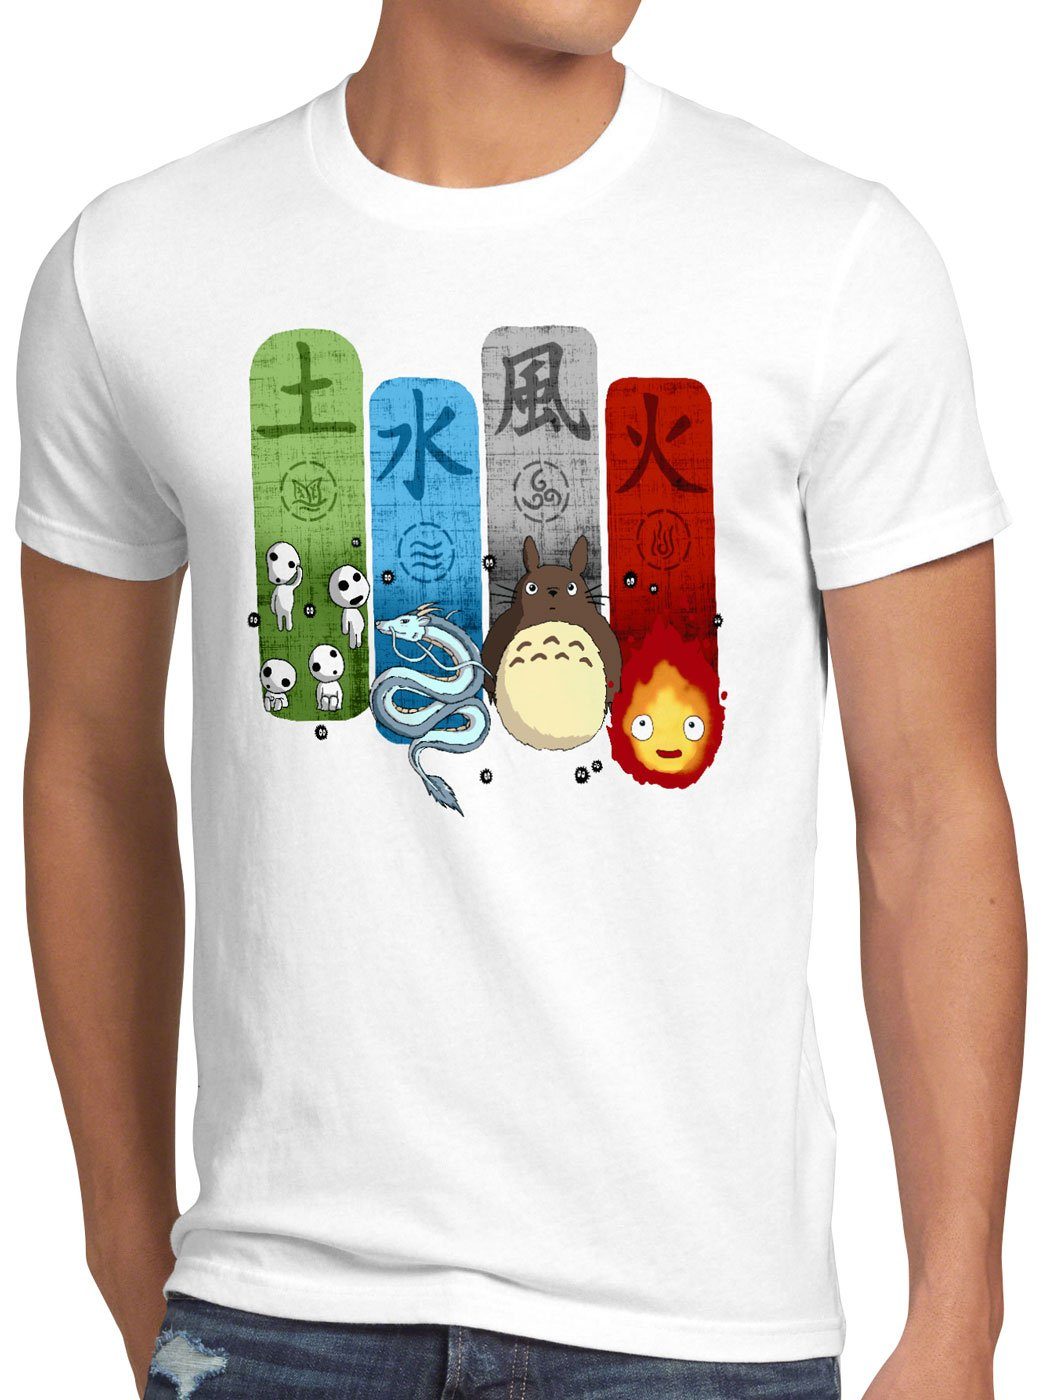 style3 Print-Shirt Herren T-Shirt Ghibli Family totoro mononoke schloss chihiro film weiß | T-Shirts